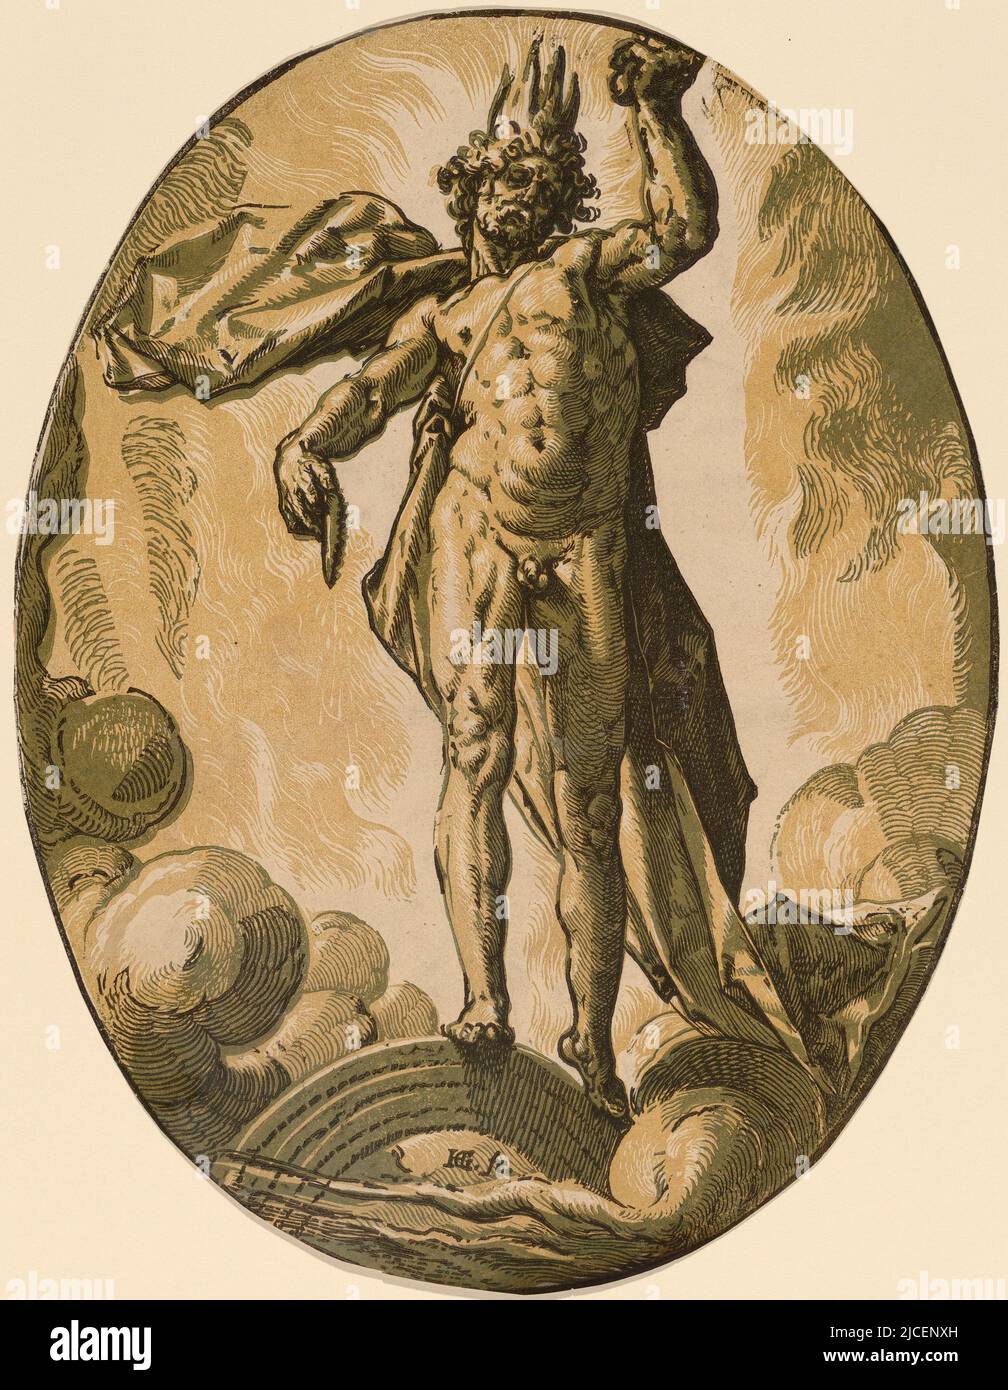 Ein Porttrait von Ether (Licht) von Hendrik Goltzius (1558-1617). In der griechischen Mythologie ist Ether der Sohn von Nyx (Nacht) und Erebus (Dunkelheit) und der Bruder von Hemera (Tag) Stockfoto